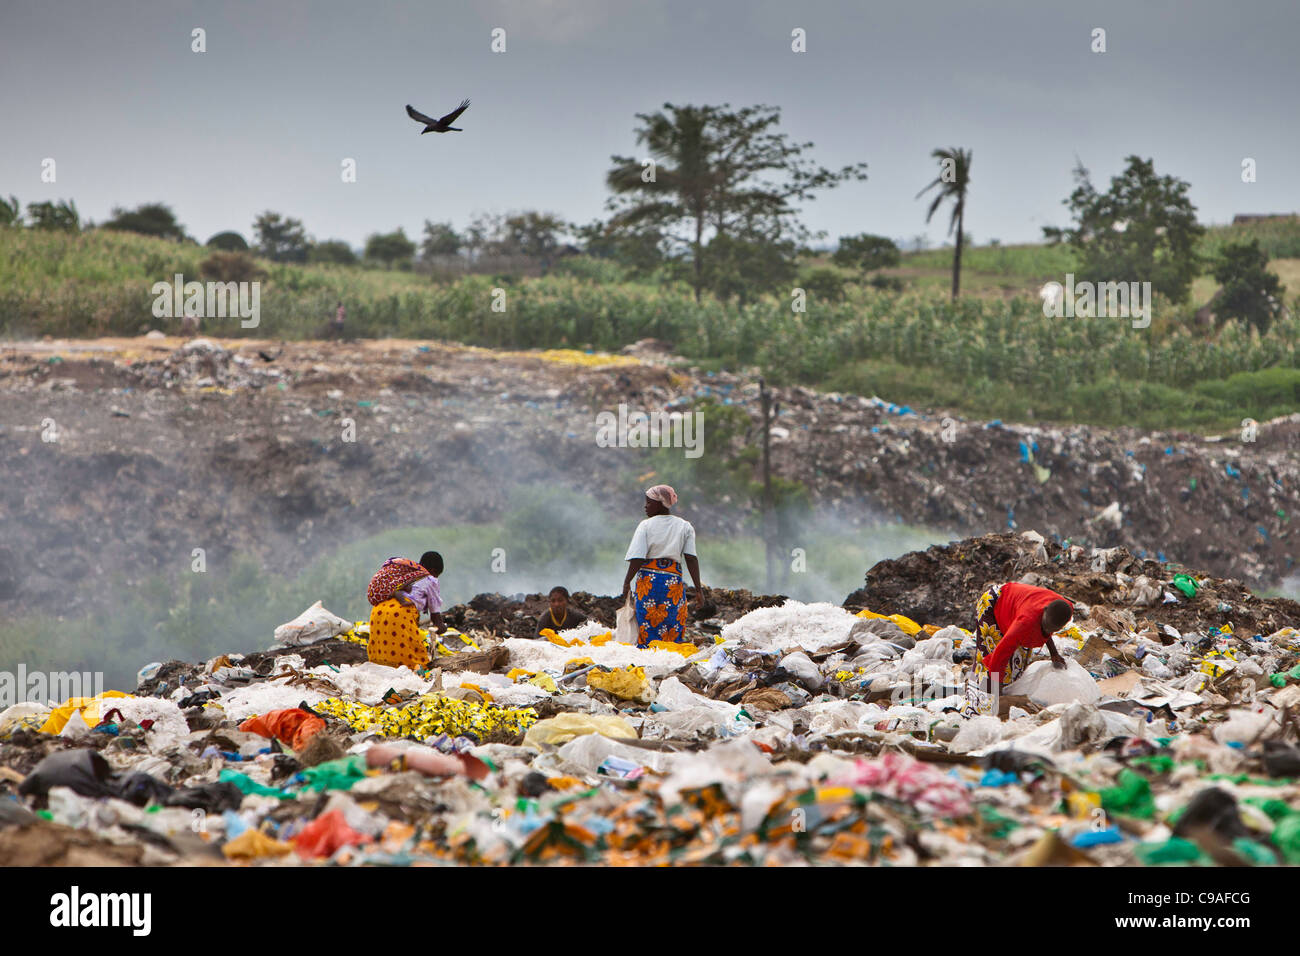 L'un des principaux sites de décharge pour Mombasa, Kenya. De nombreux enfants se trouvent la collecte de métaux et de plastique. Banque D'Images